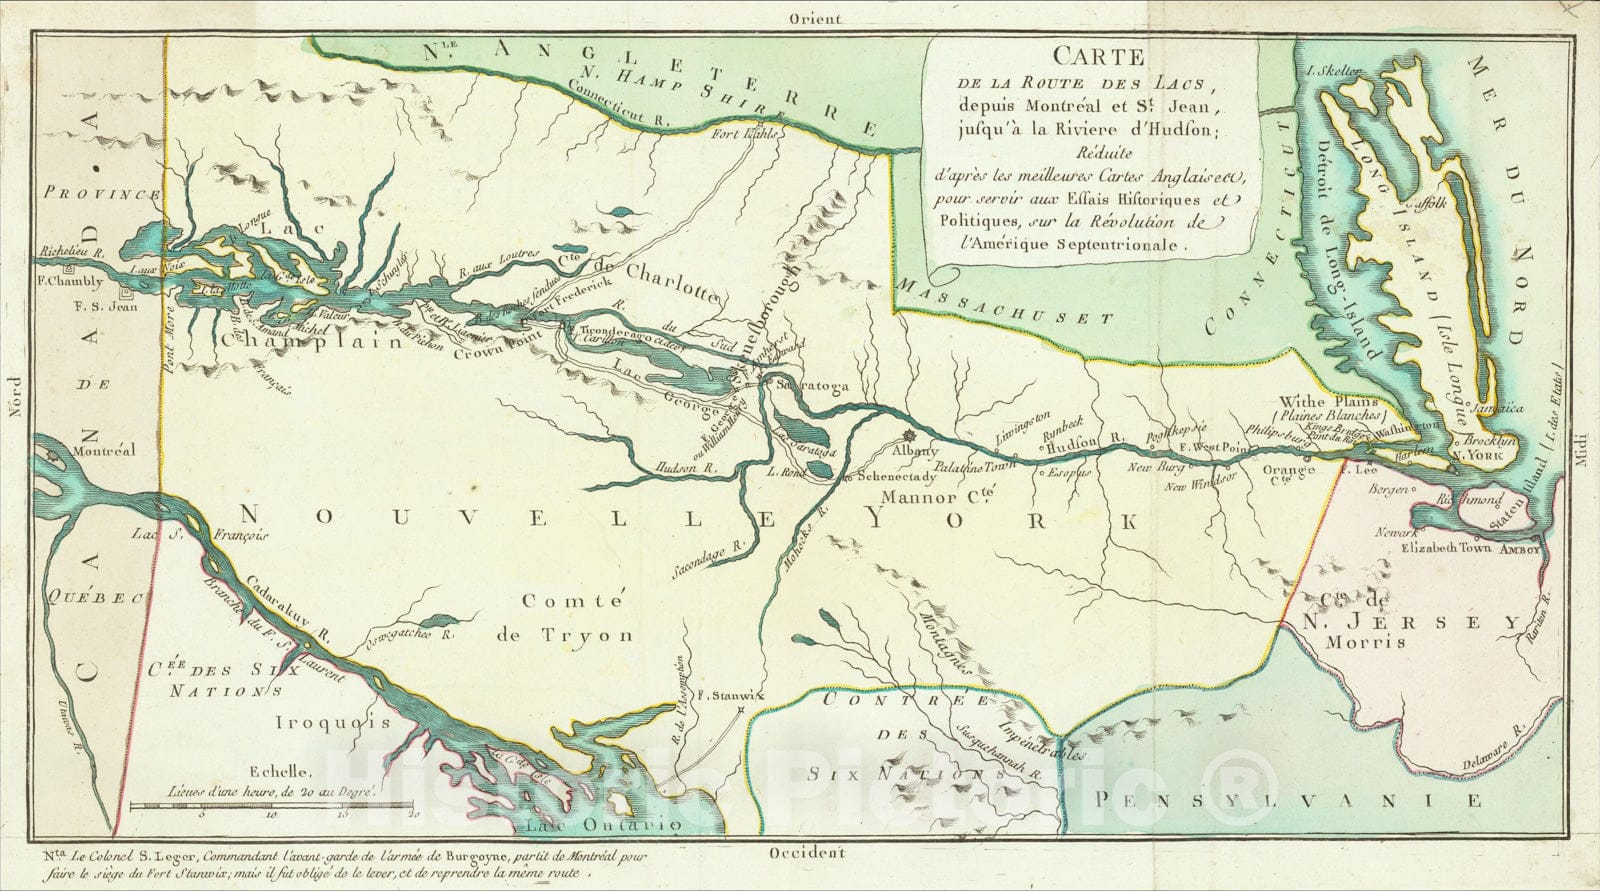 Historic Map : Carte de la Route des Lacs, depuis Montreal et St. Jean, jusqu'a a la Riviere d'Hudson, 1782, Michel Rene Hilliard d'Auberteuil, Vintage Wall Art